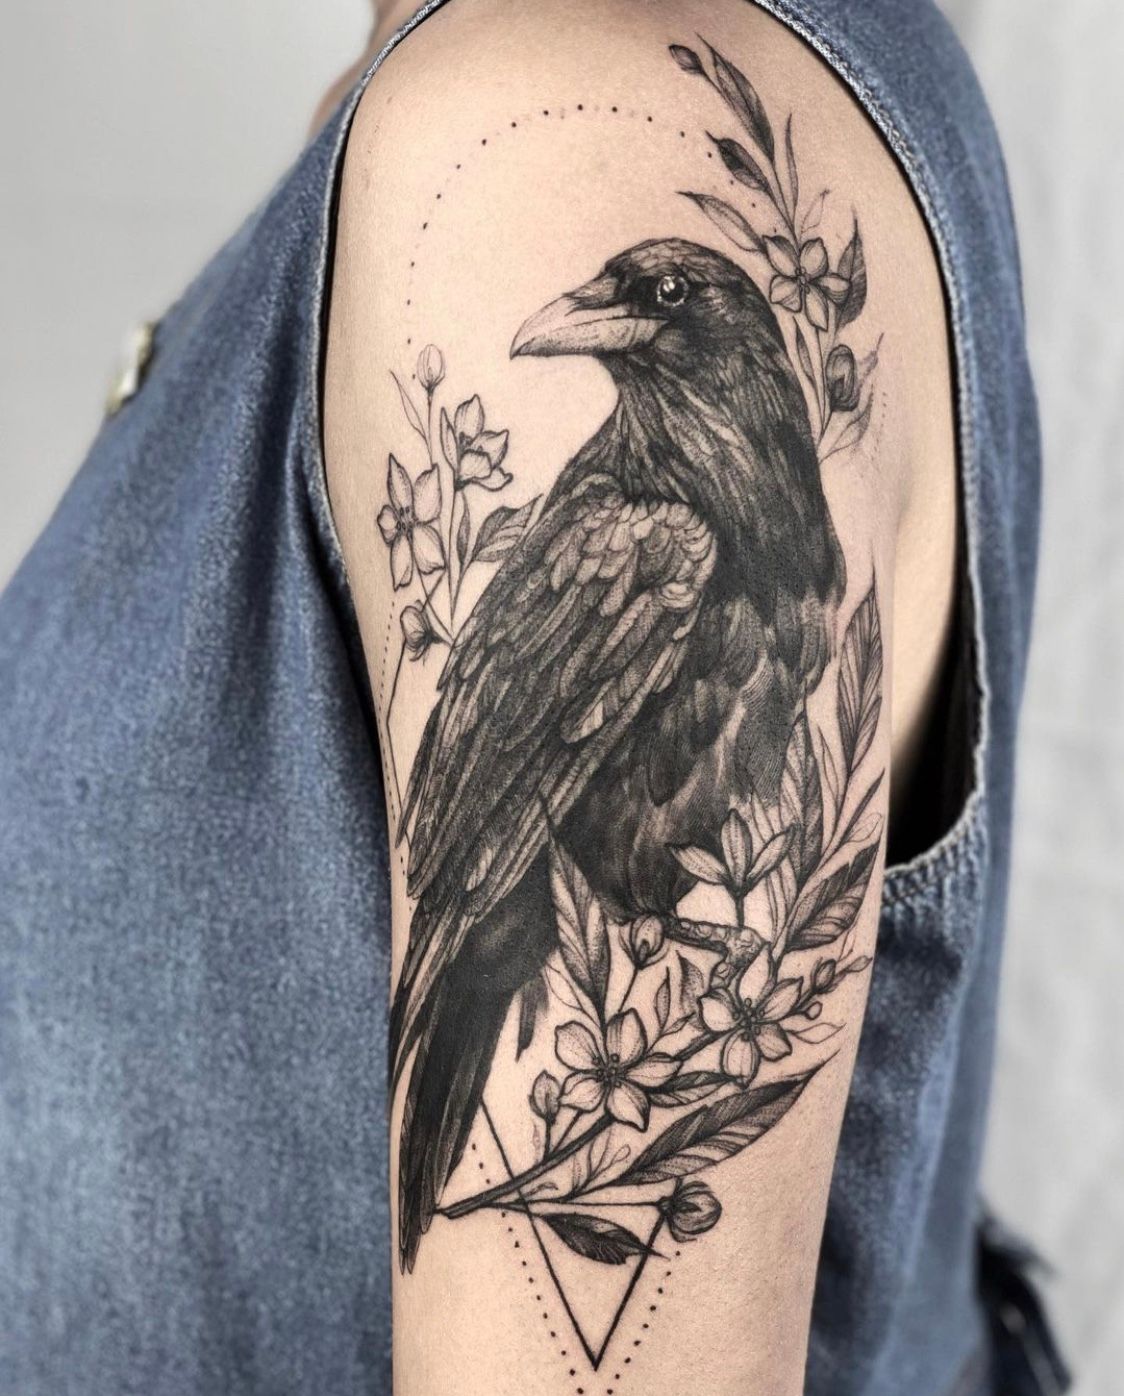 Explore the 45 Best Crow Tattoo Ideas (2020) • Tattoodo